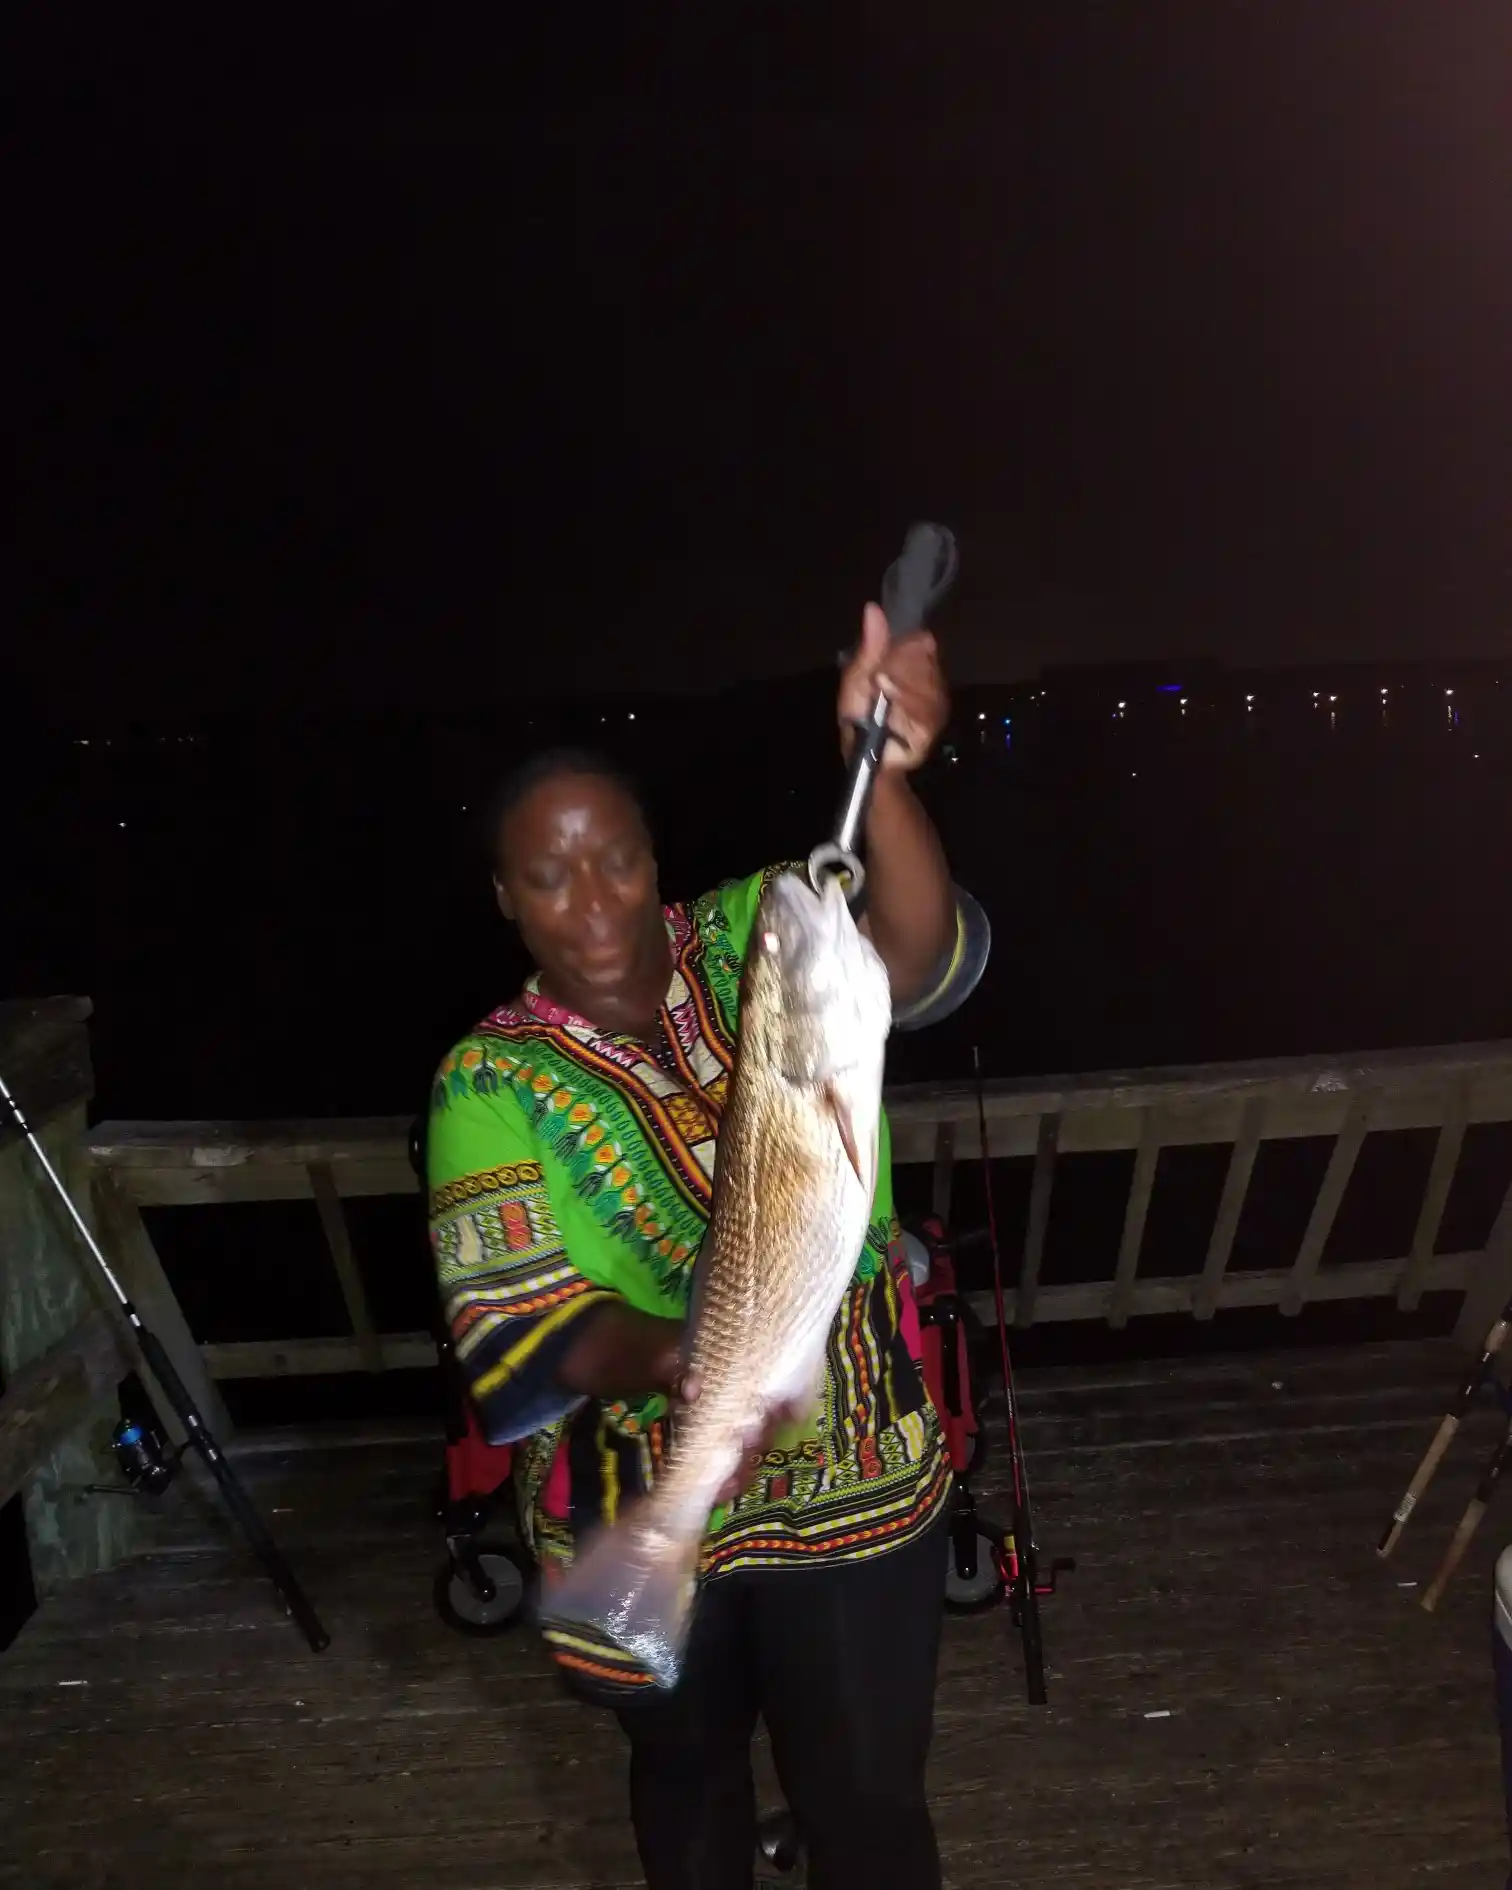 Doctor fish. Florida, USA : r/Fishing